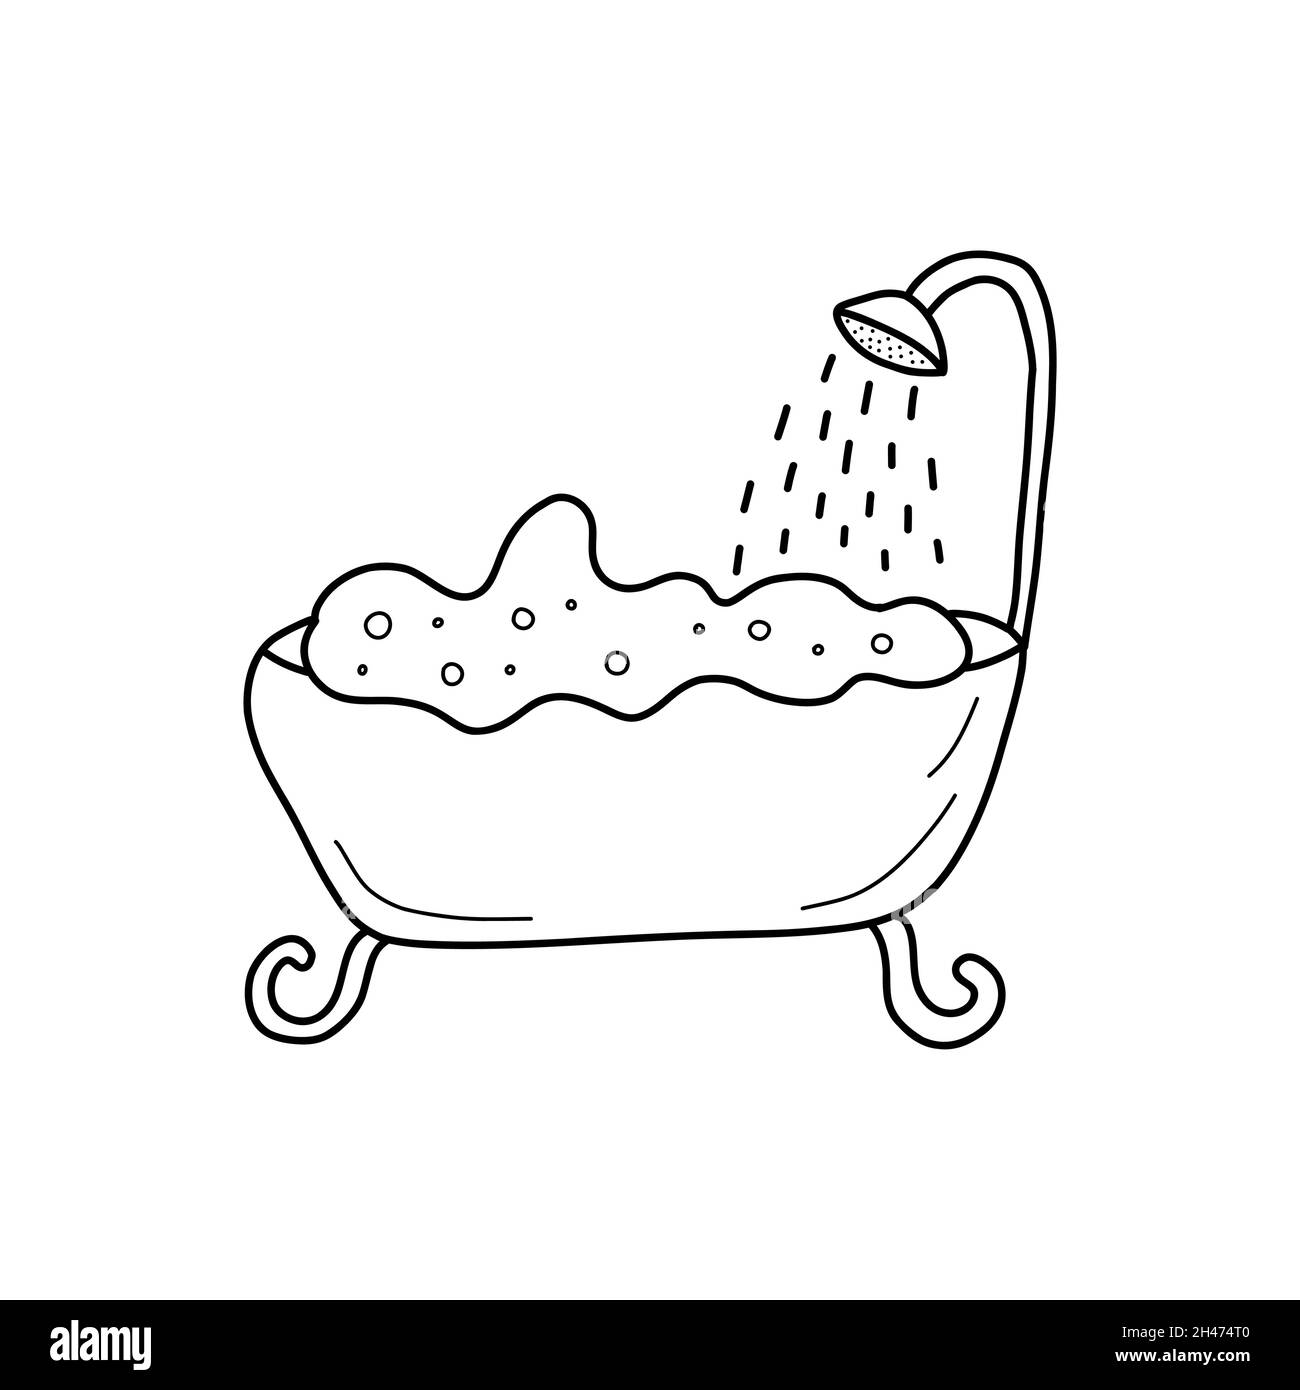 Gefülltes Badezimmer mit Schaum und Blasen. Von oben gießt Dusche. Morgendliche Routine. Schwarz-Weiß-Vektor isoliert Illustration Doodle Stock Vektor